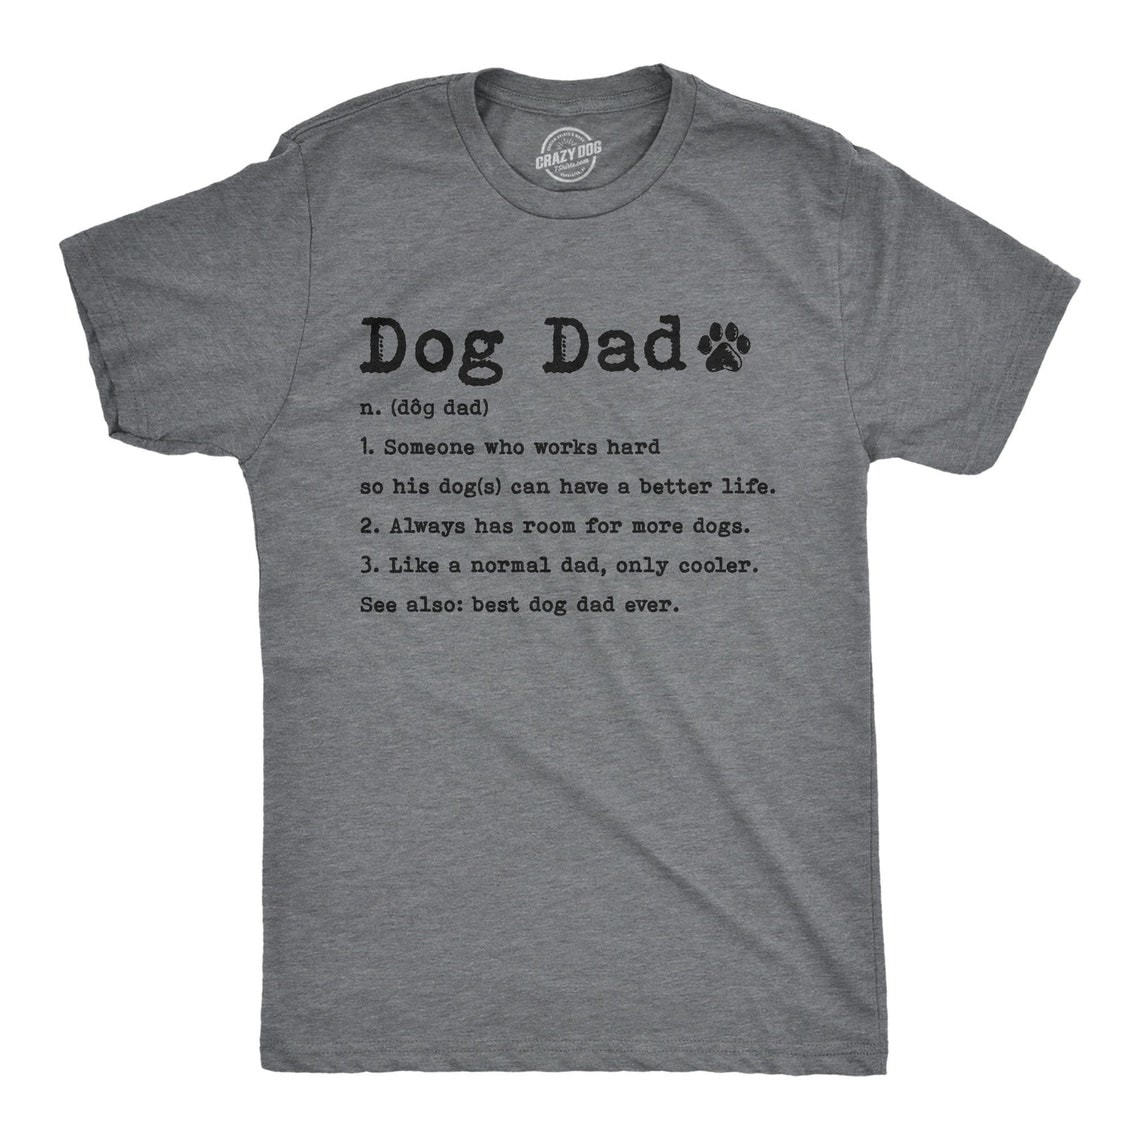 Dog Dad Shirt, Dog Dad Definition, Funny Dog Shirt